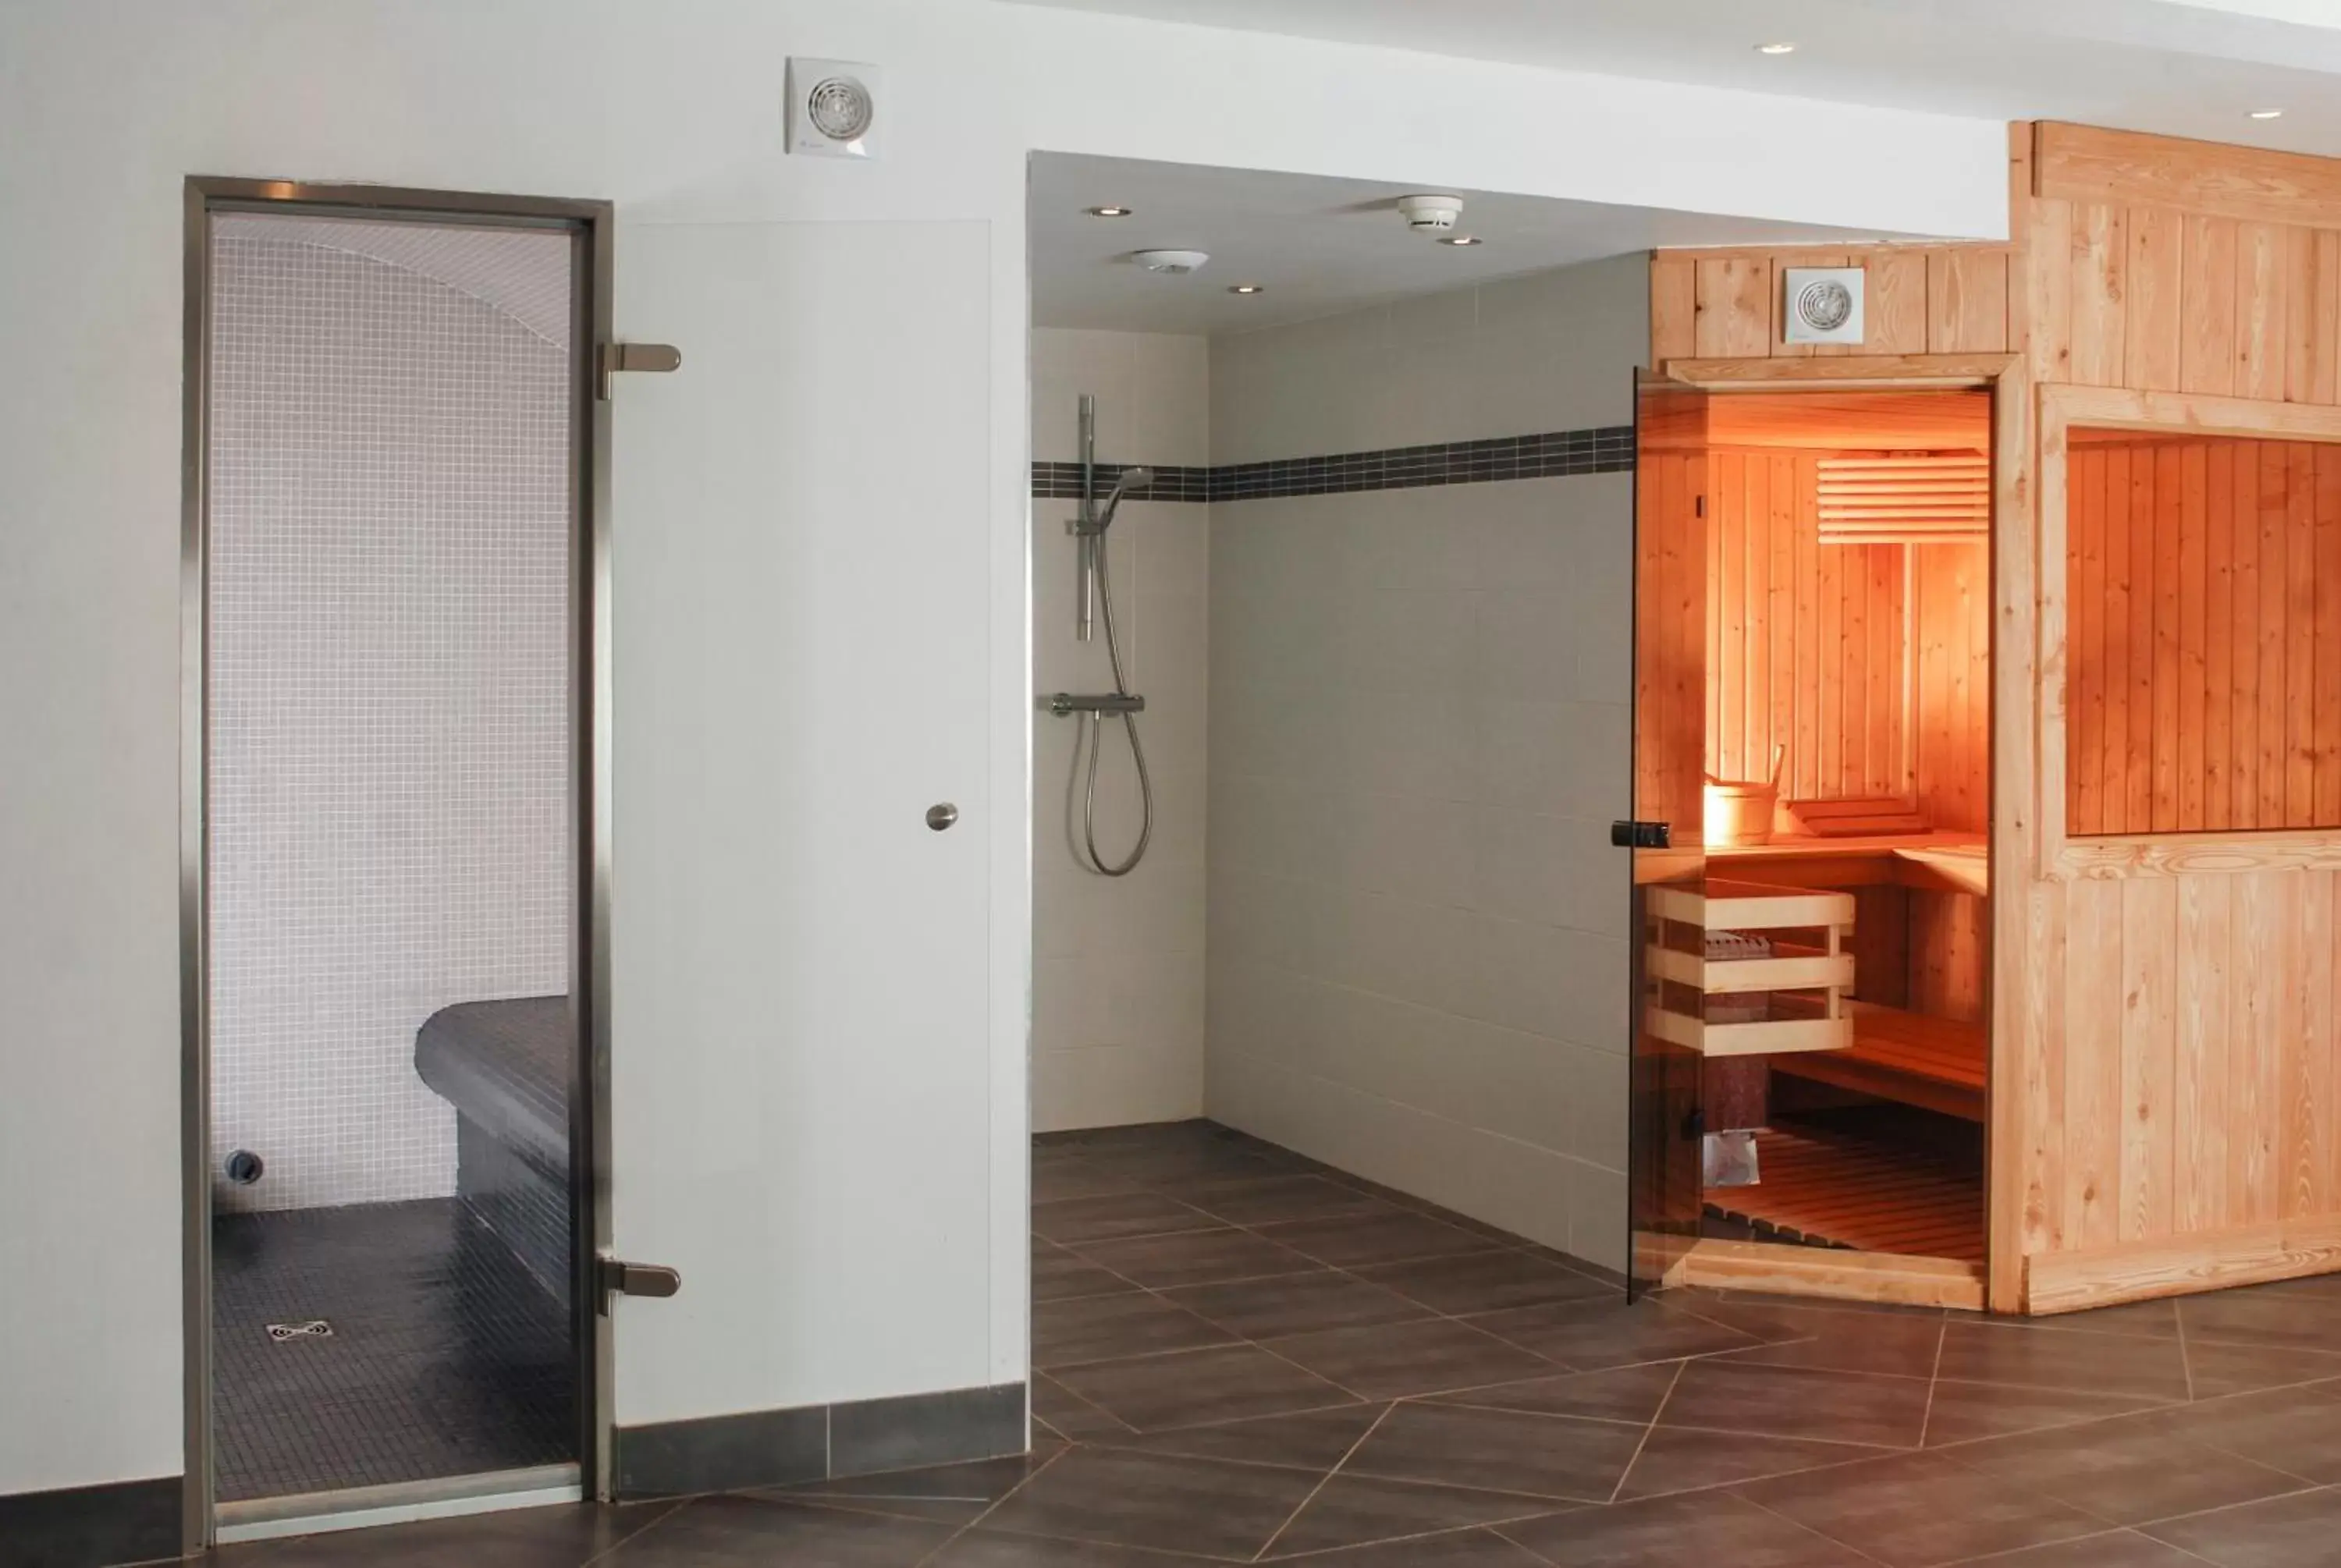 Spa and wellness centre/facilities, Bathroom in Hotel La Chaudanne